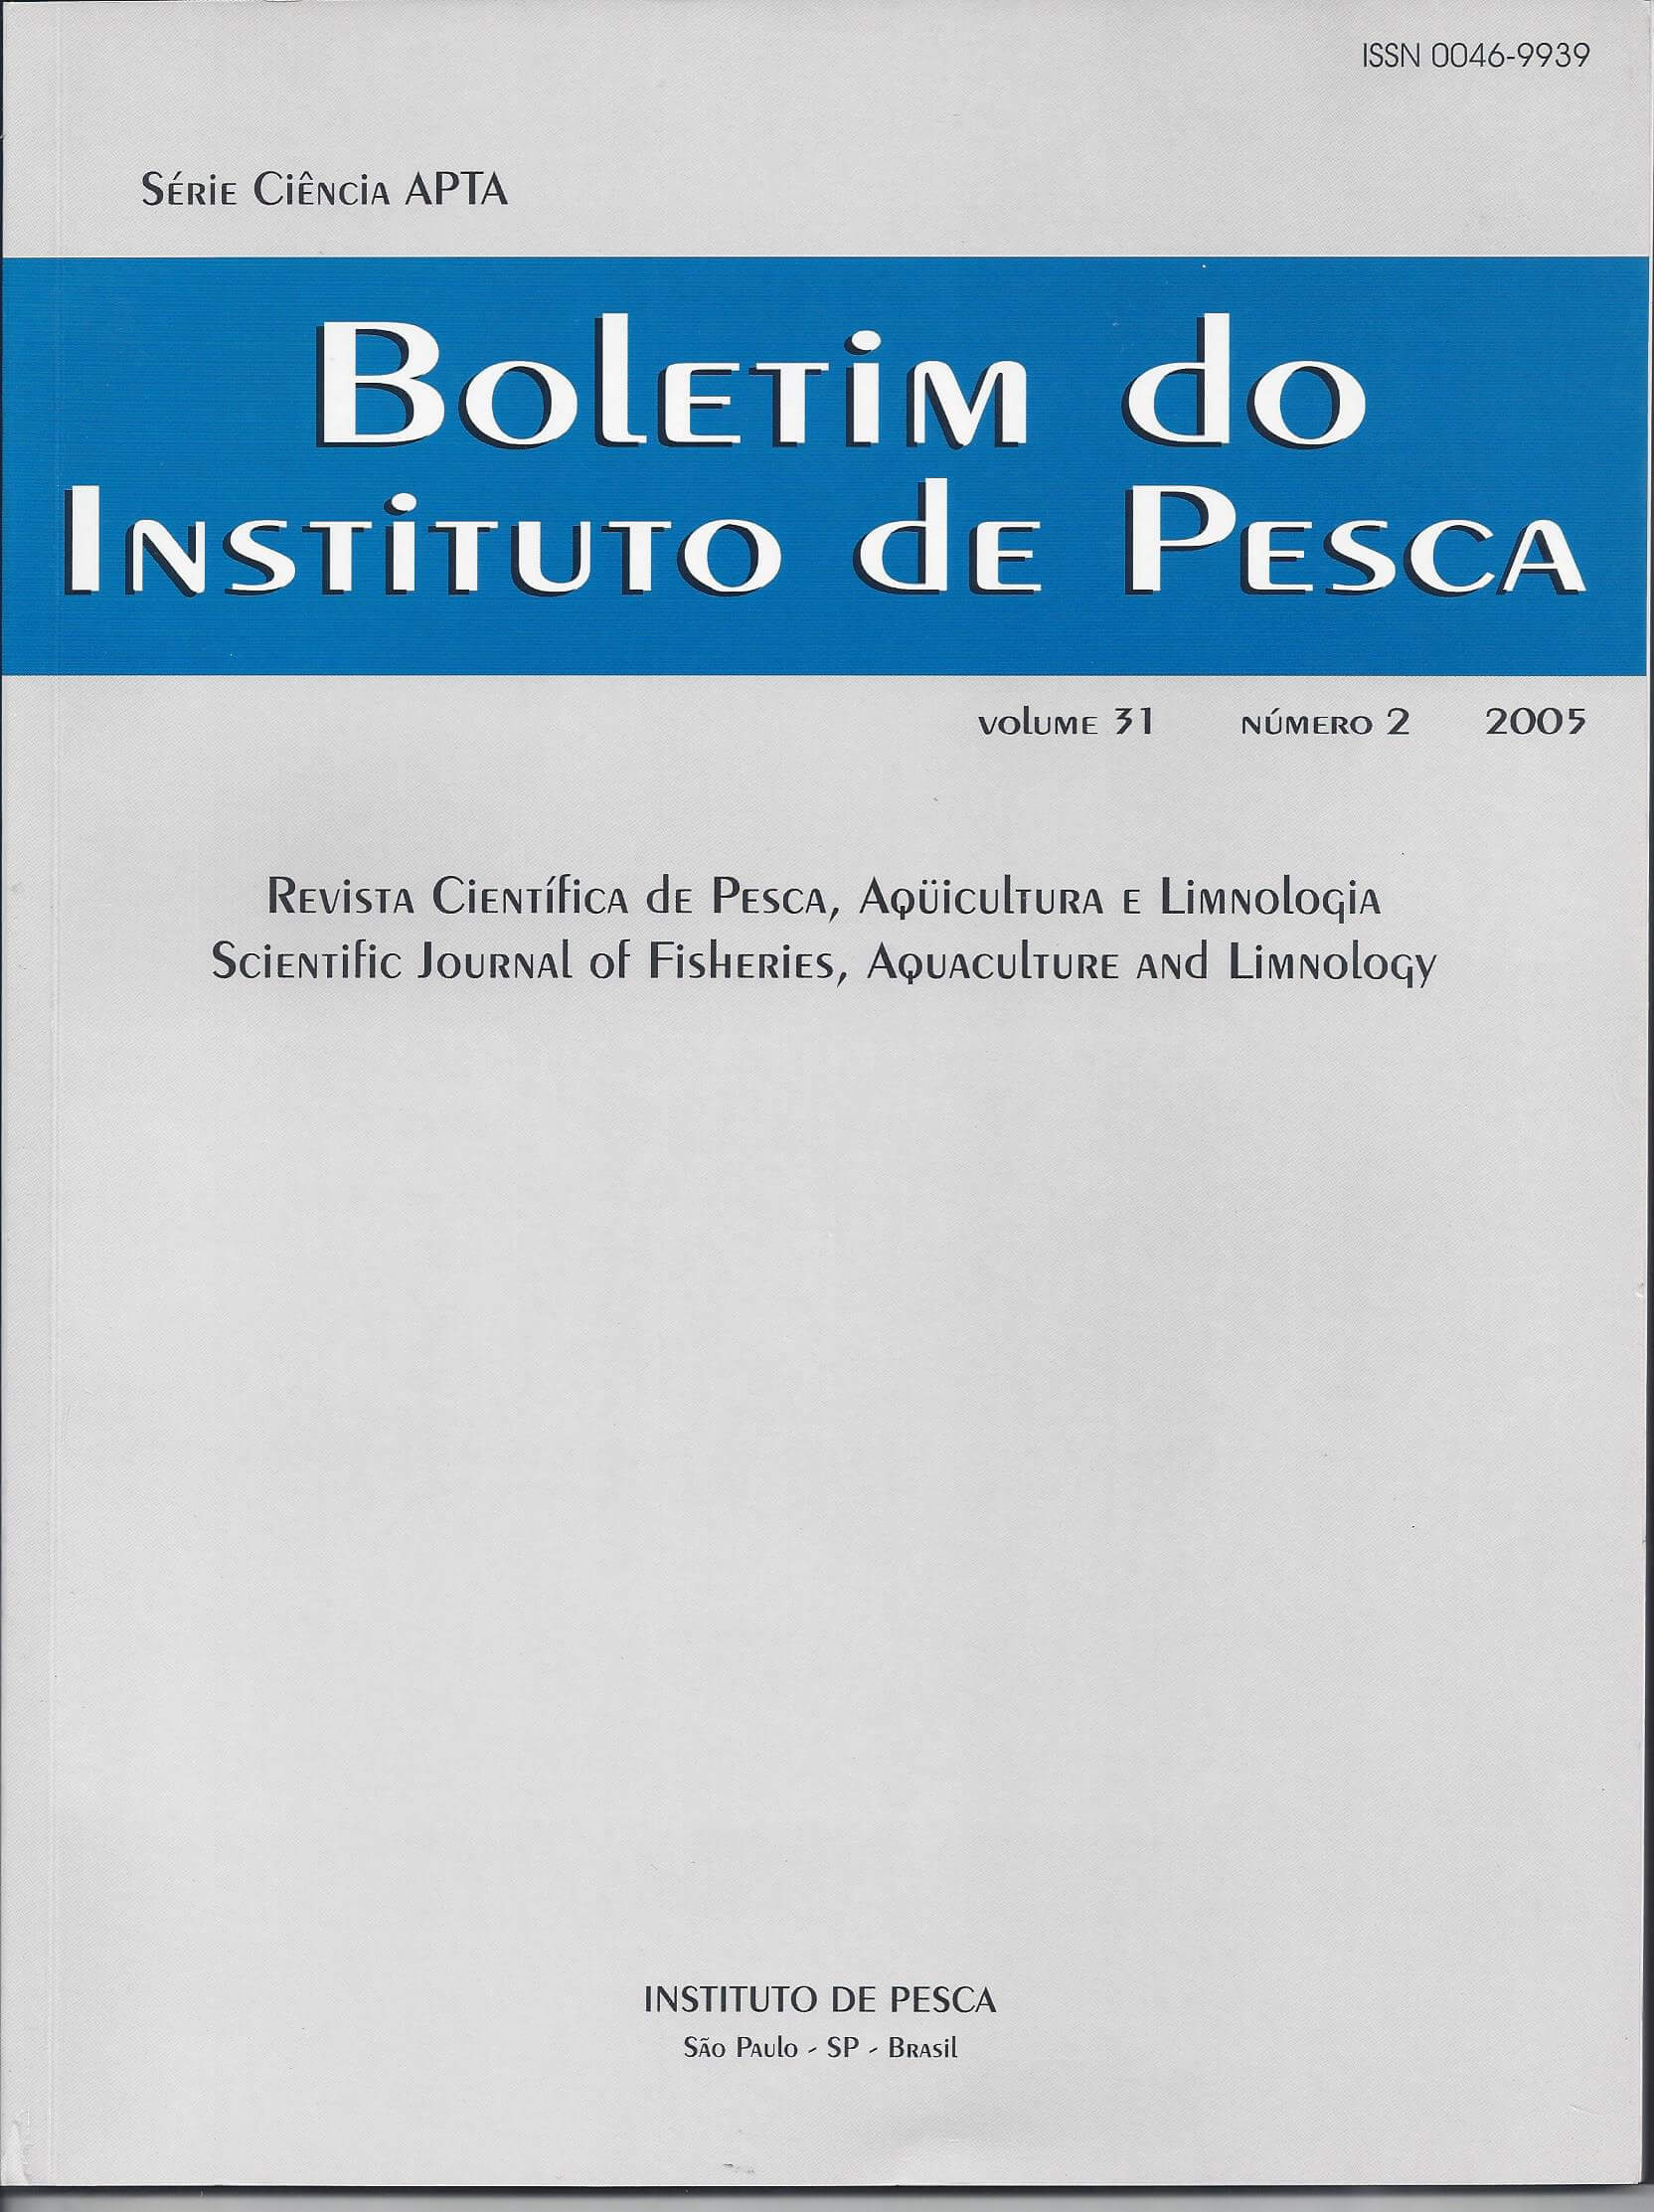 					View Vol. 31 No. 2 (2005): BOLETIM DO INSTITUTO DE PESCA
				